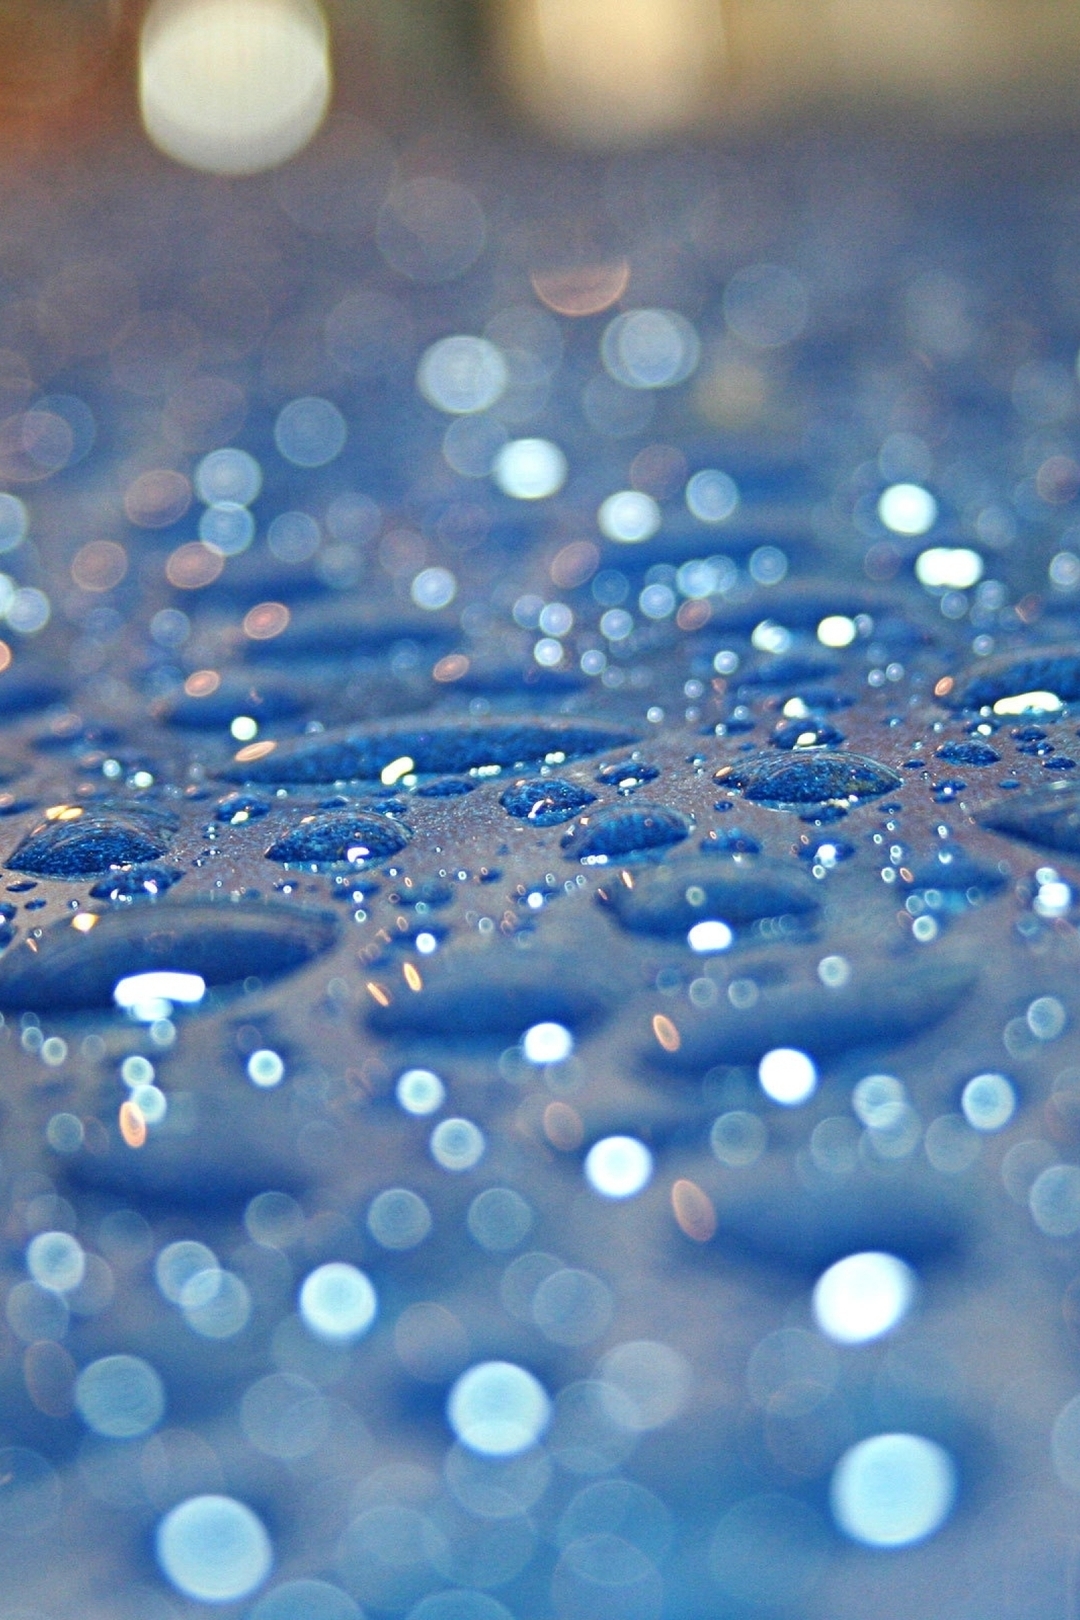 Image: Drops, blue, rain, glare